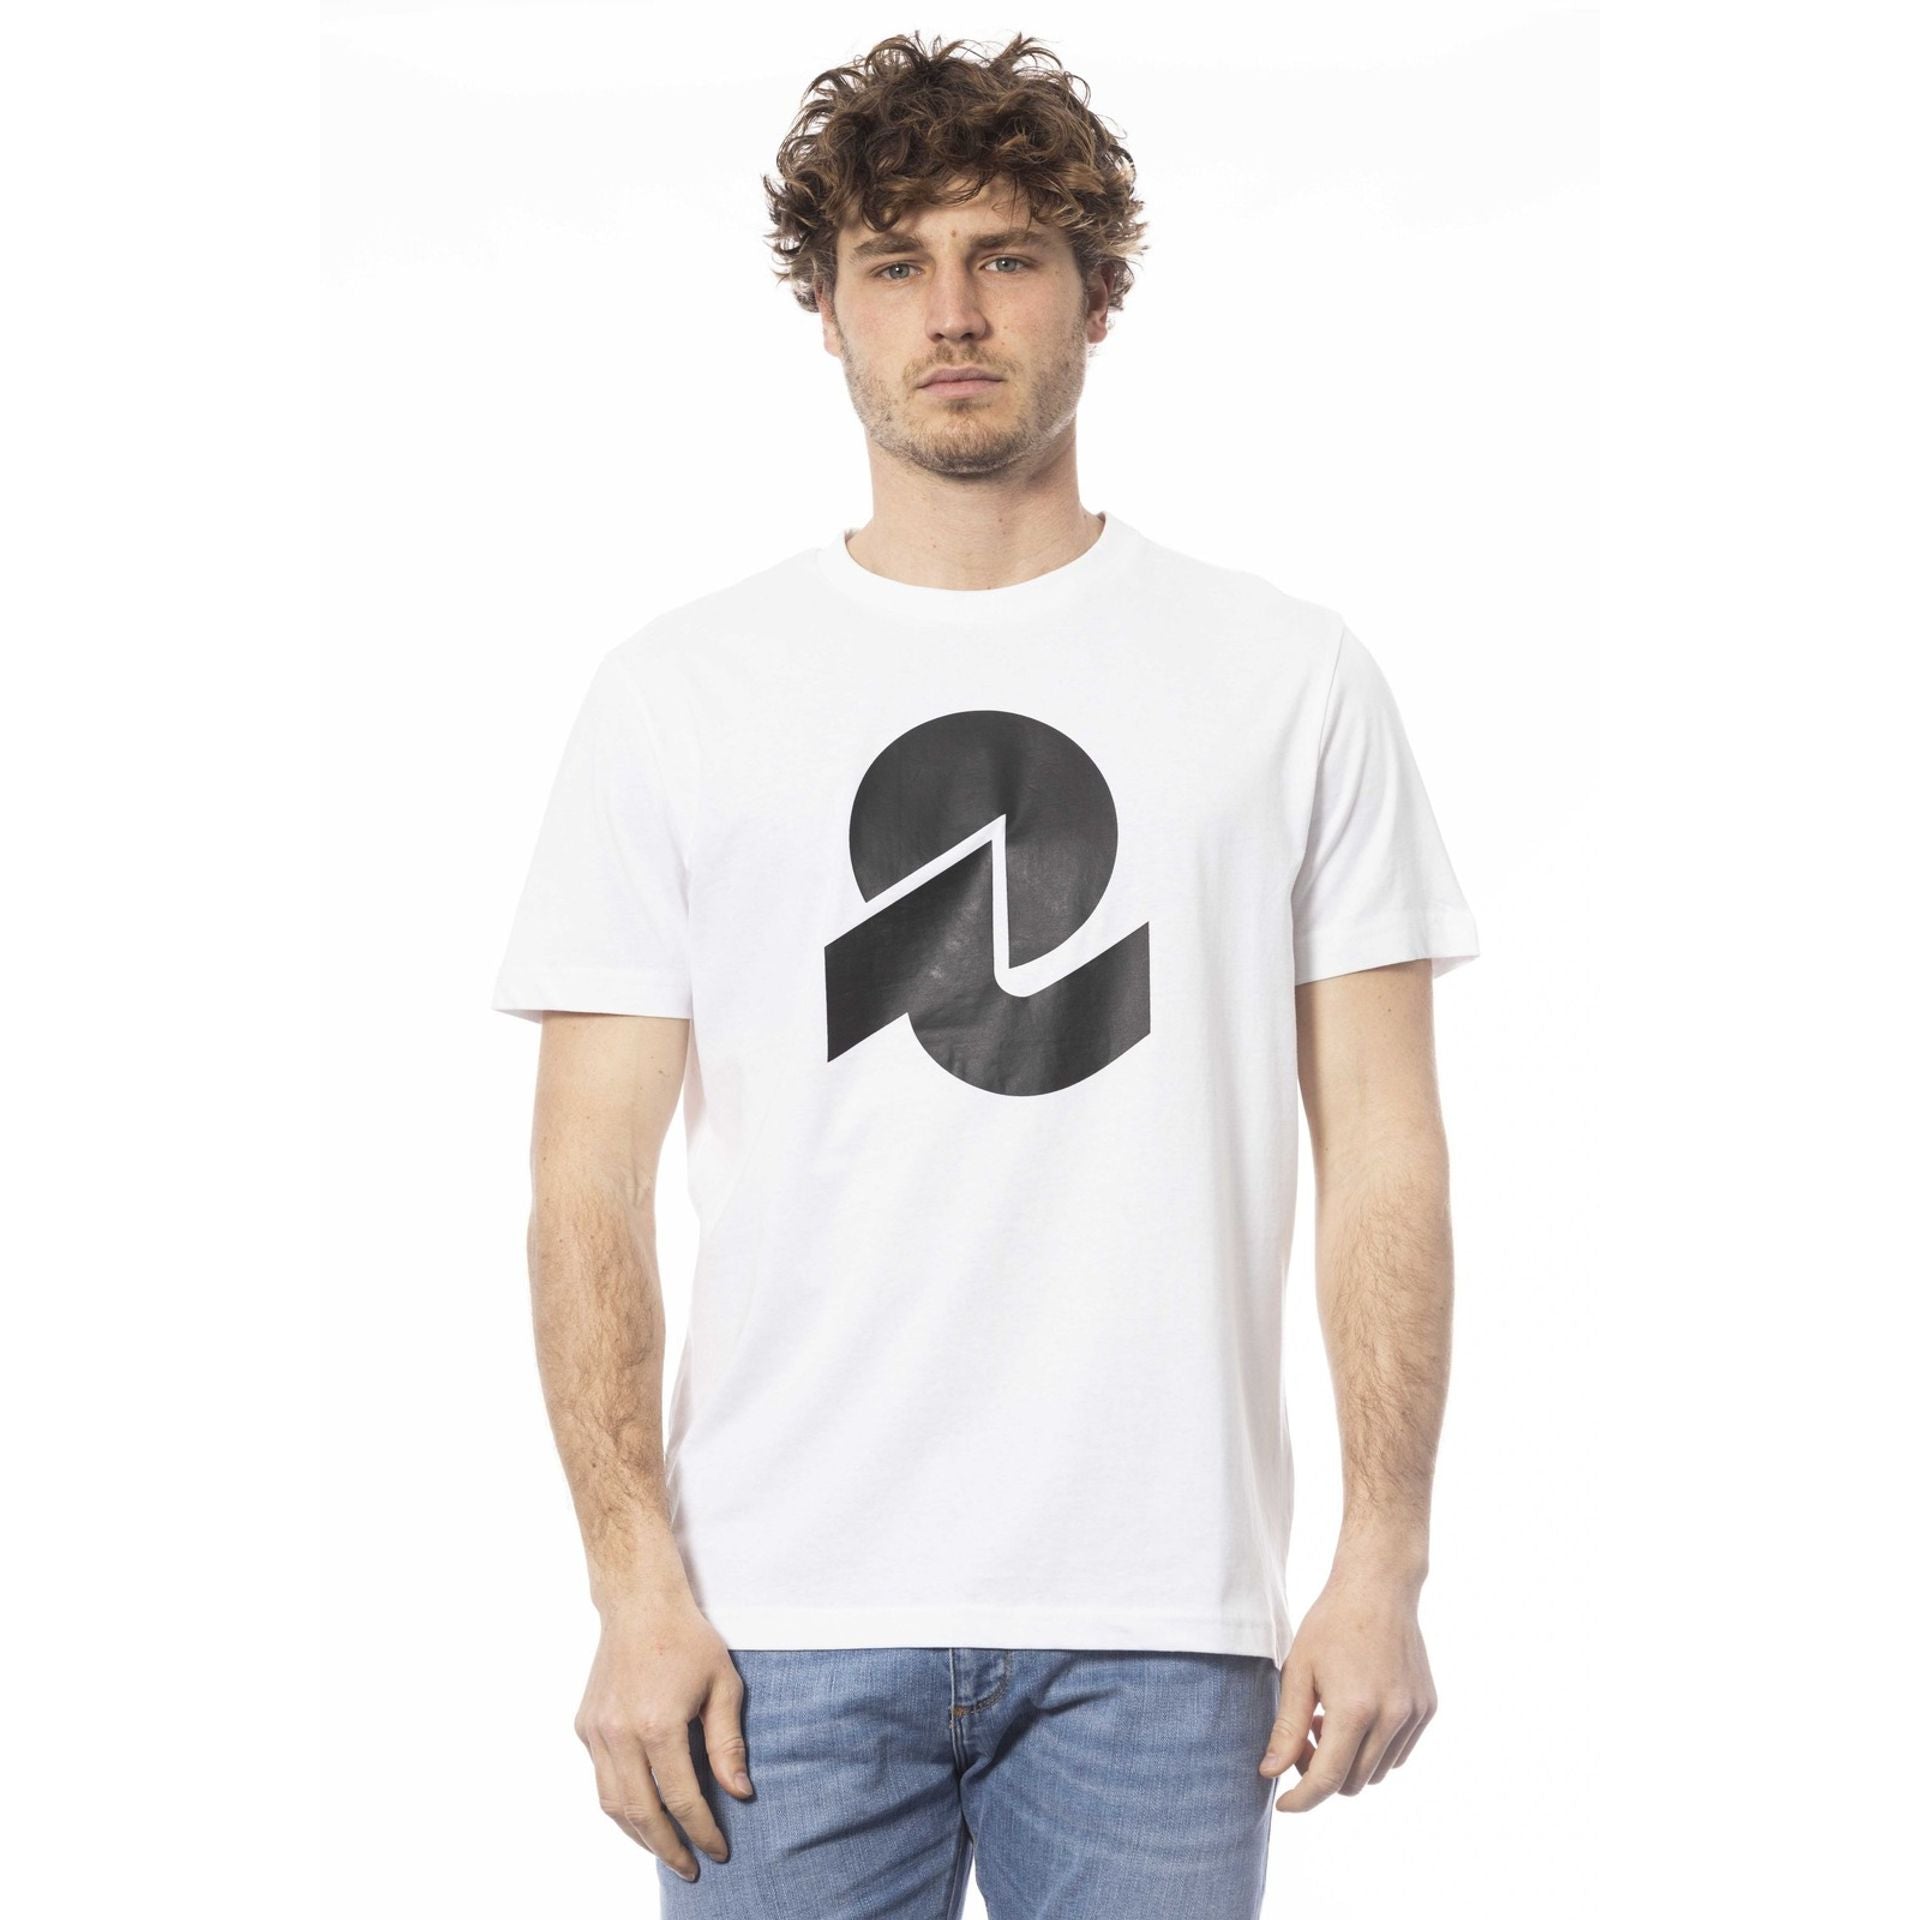 Invicta T-shirts